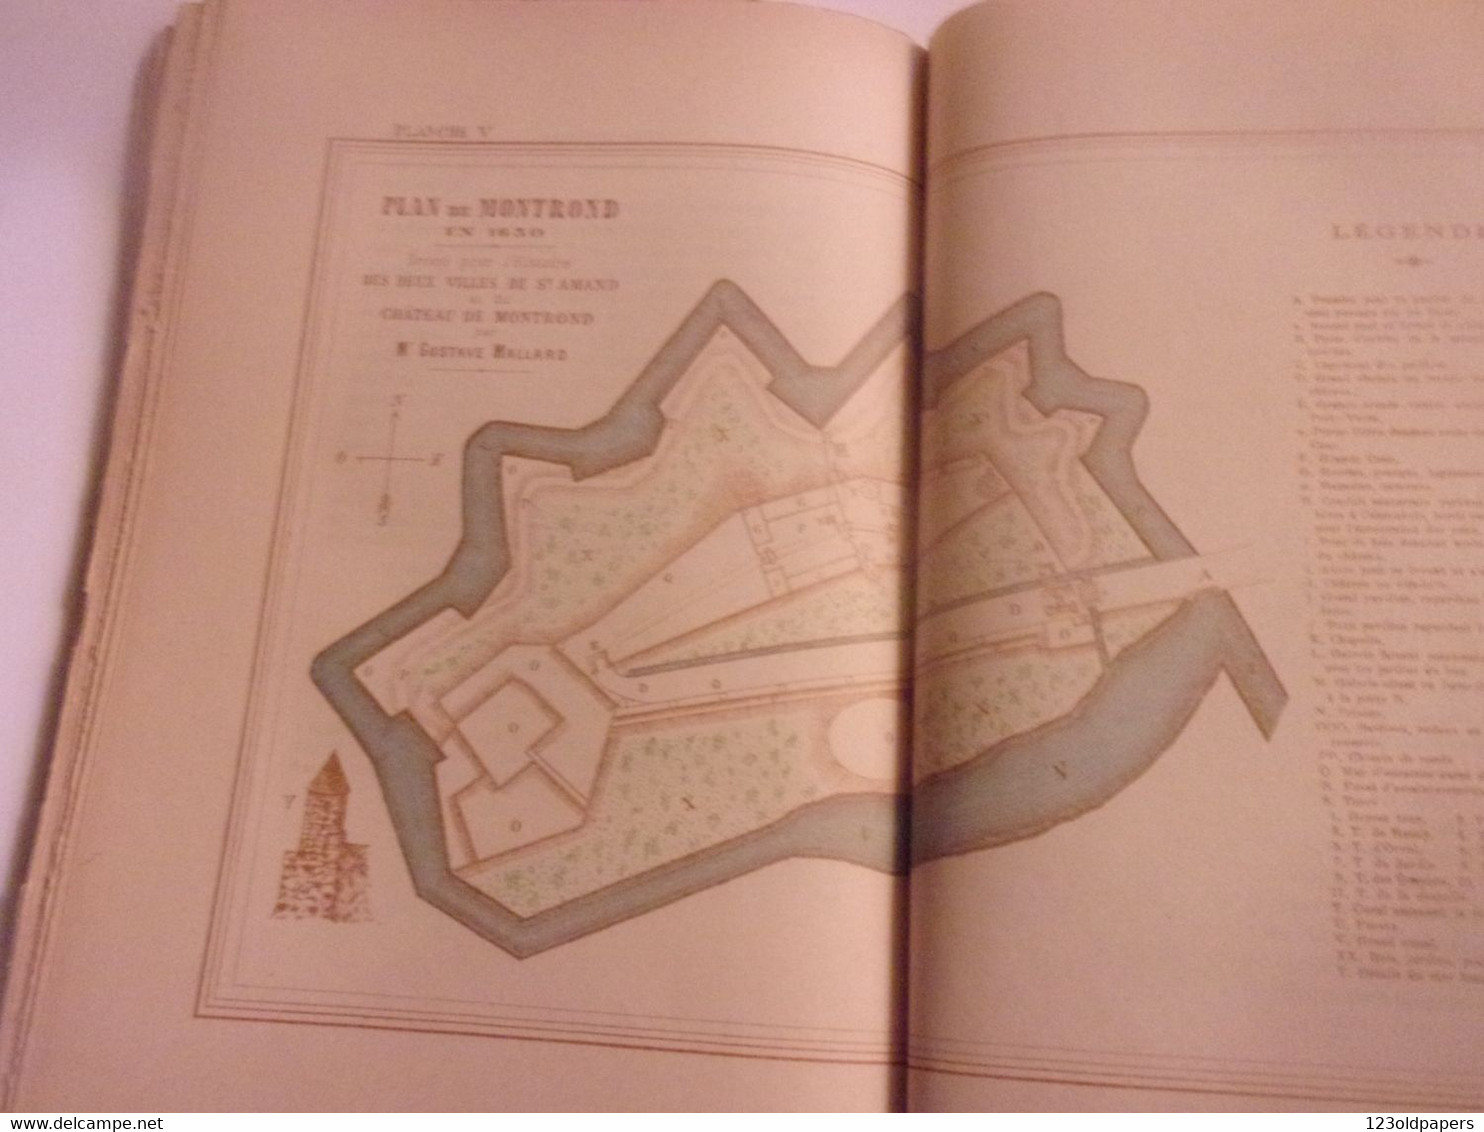 ♥️  BERRY 1895 Histoire des deux villes de Saint-Amand et du Château de Montrond. MALLARD  MONOGRAPHIE